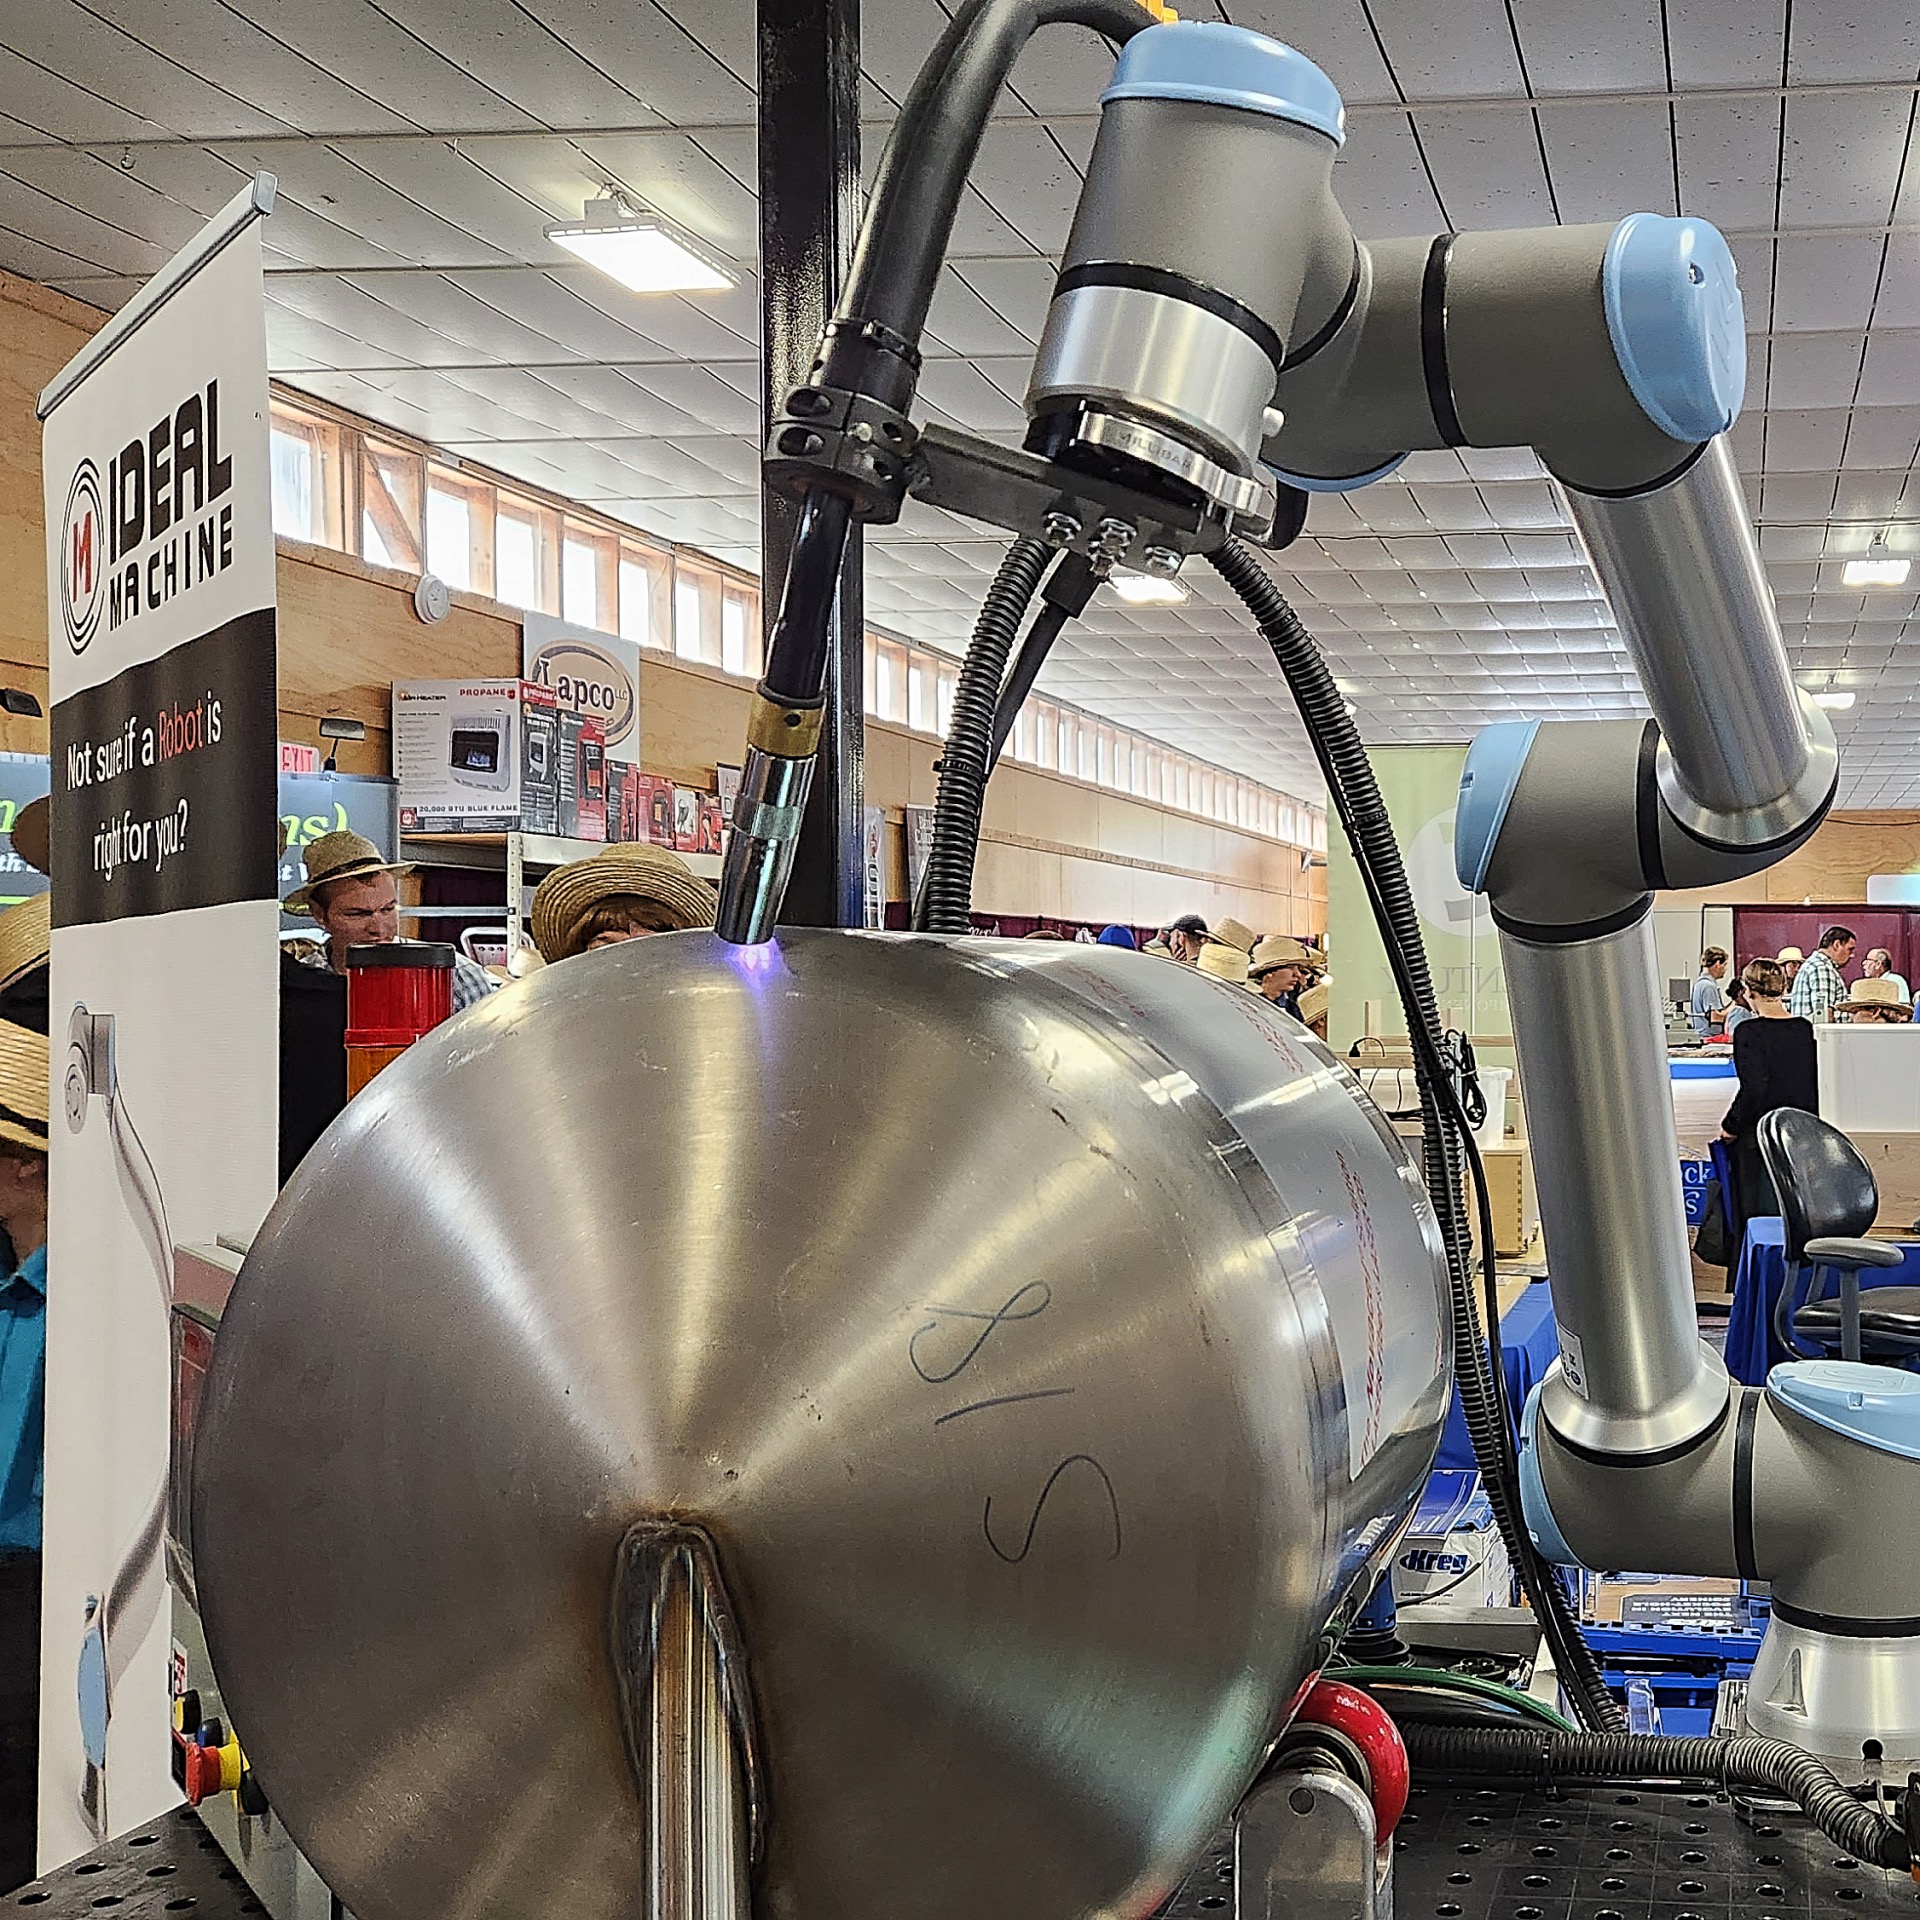 penn-lancaster-robotics-robot-welding-demo-ideal-machine